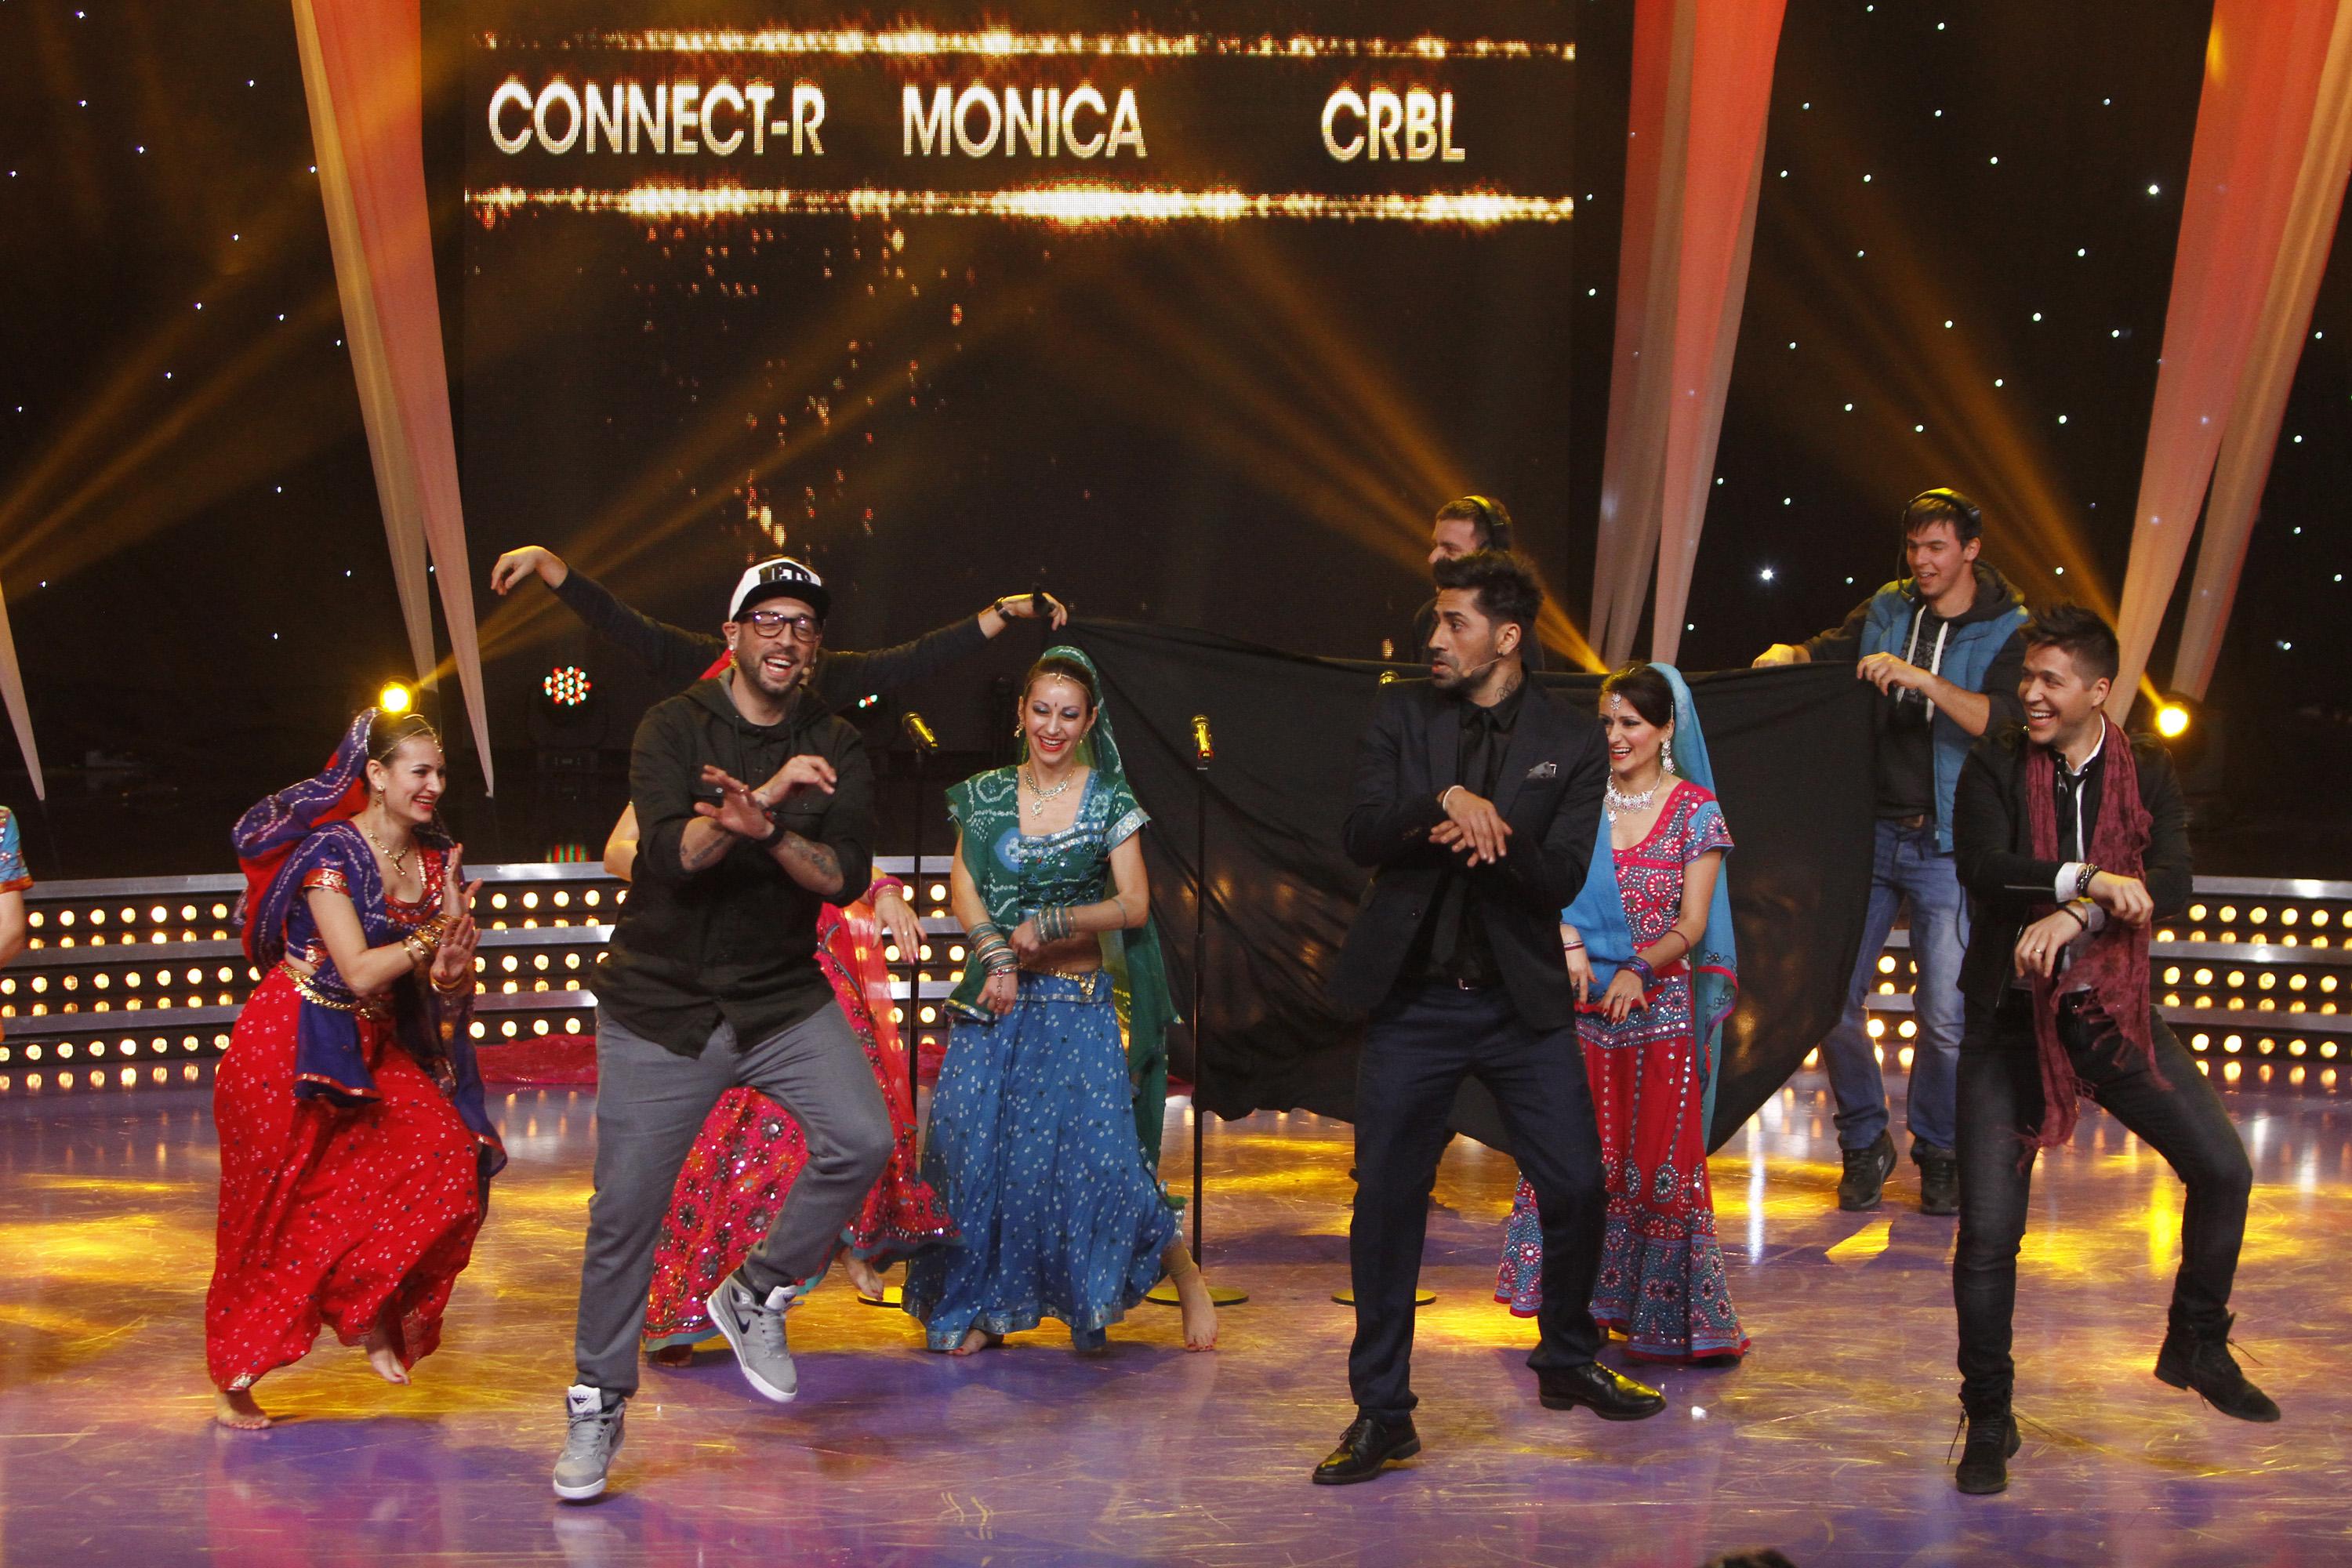 Raj Kapoor ar fi invidios: CRBL, Connect-R şi Jorge sunt pregătiţi să danseze chiar la Bollywood